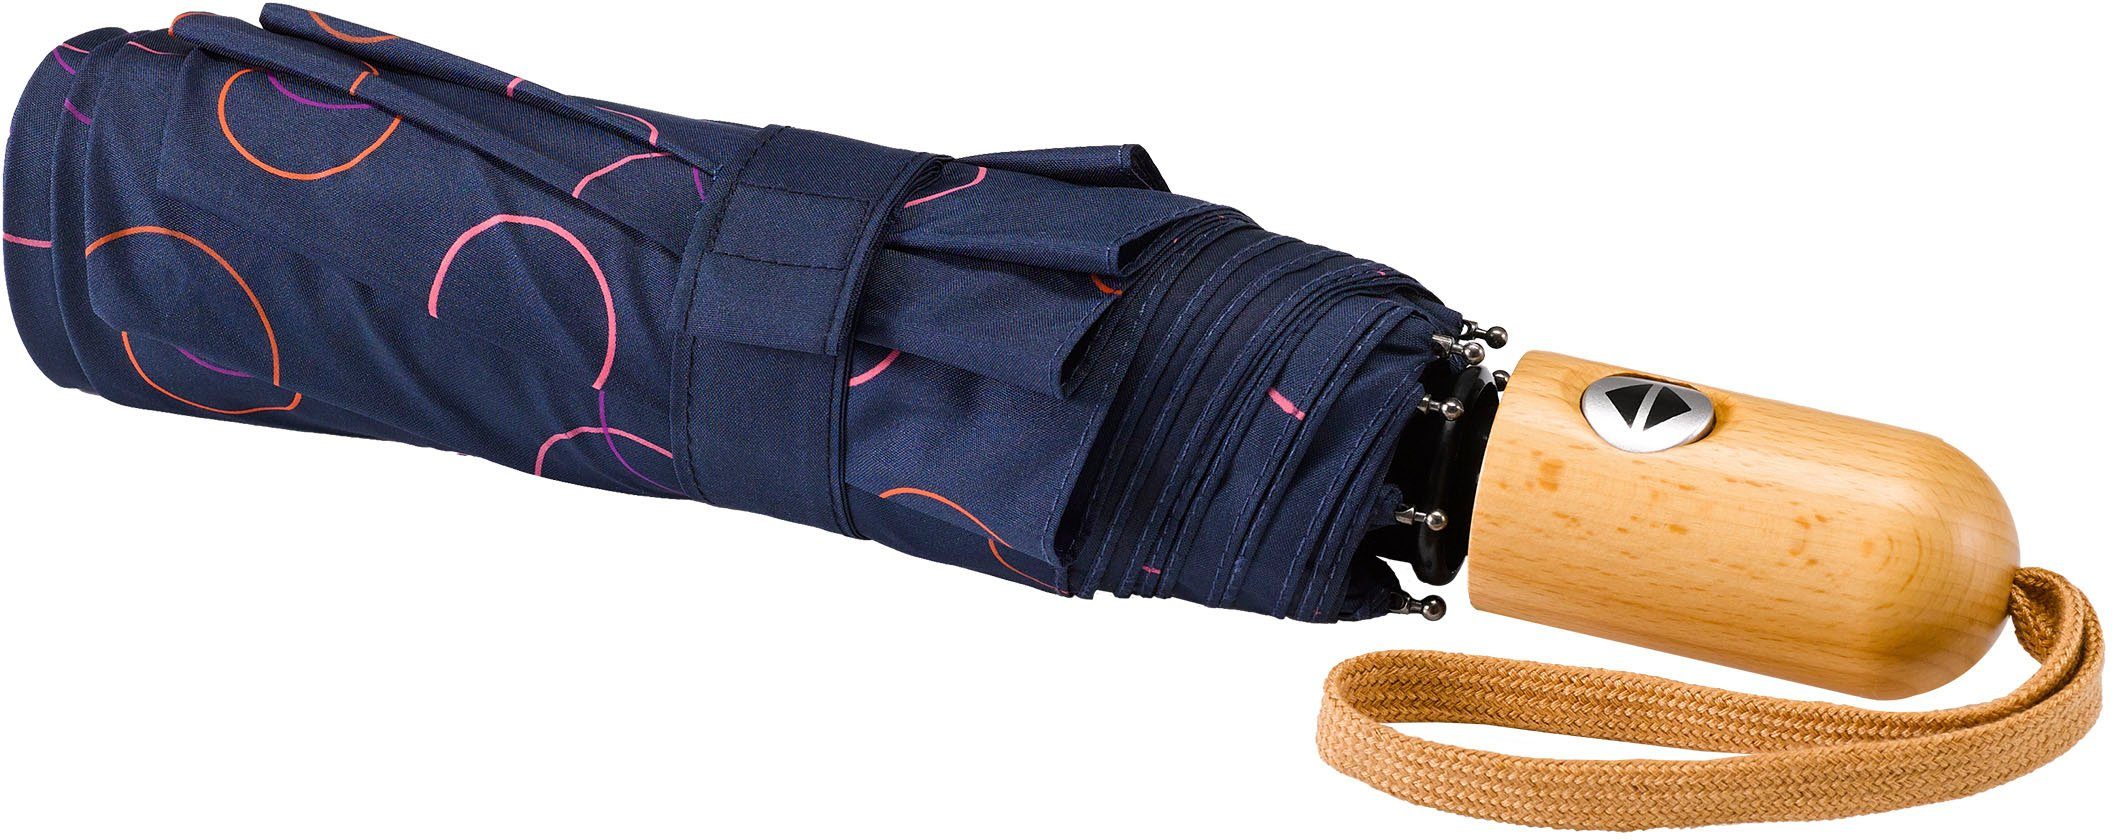 Taschenregenschirm Umwelt-Taschenschirm, pink EuroSCHIRM® marine, Kreise